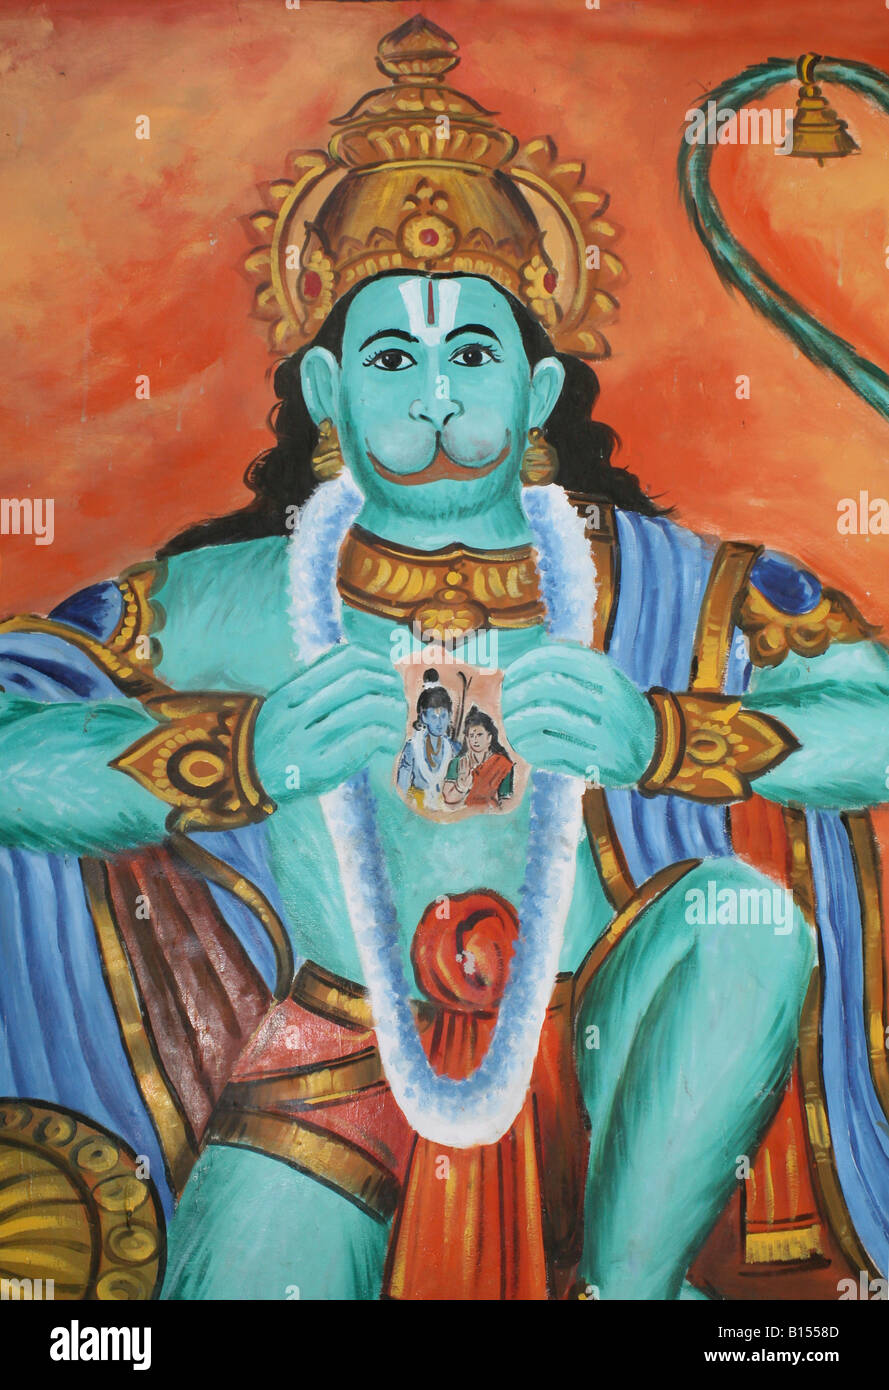 Mural de Hanuman, el dios mono hindú mostrando que Rama y Sita en su corazón, Tamil Nadu, India Foto de stock